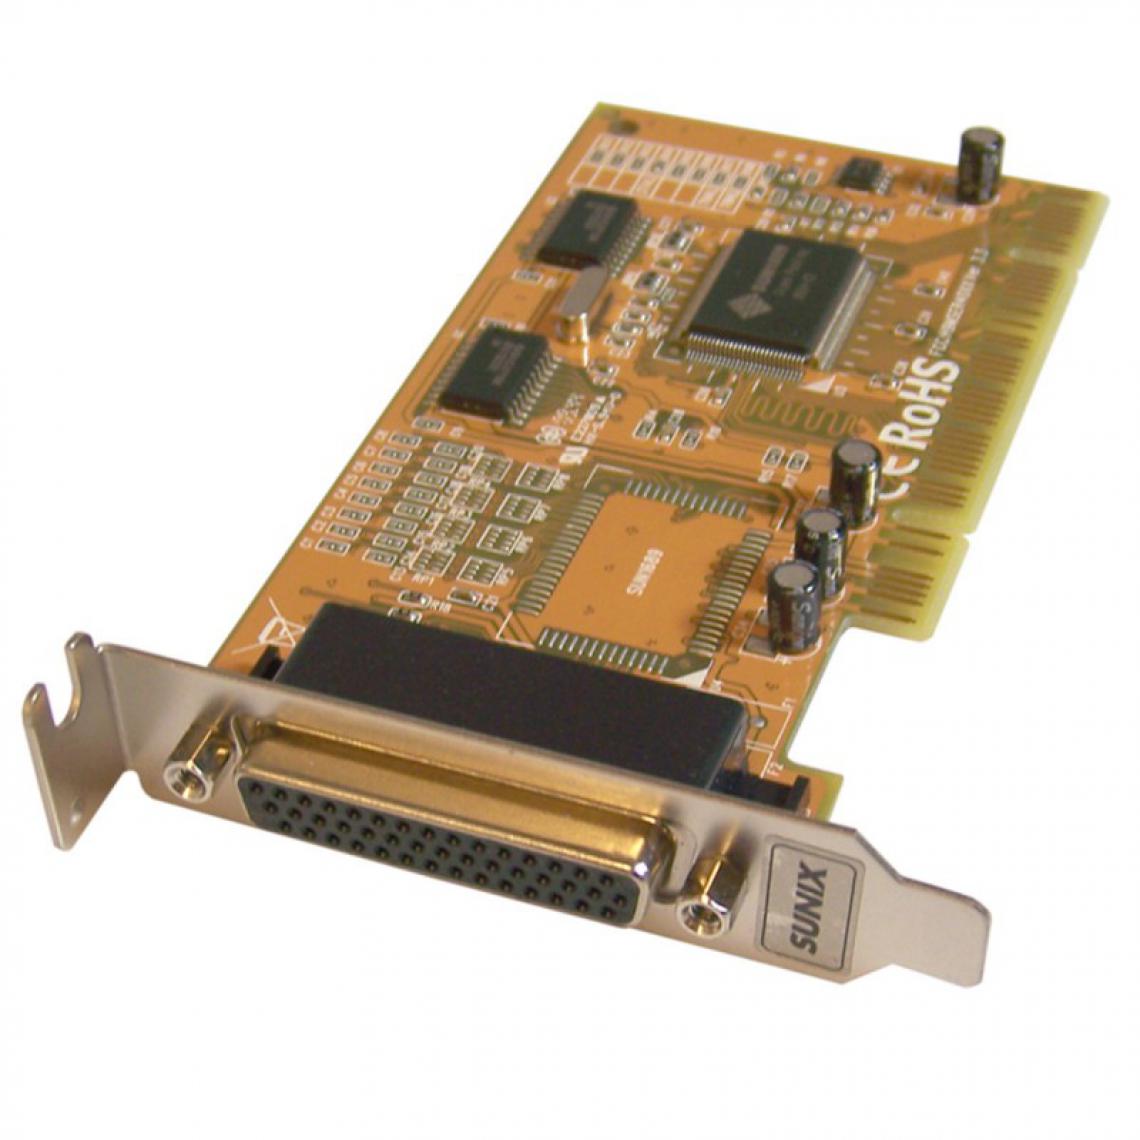 Sunix - Carte PCI Parallèle LPT 44-Pin SUNIX PK690 H9MSER40XX ZL 97 2 5096.X Low Profile - Carte Contrôleur USB